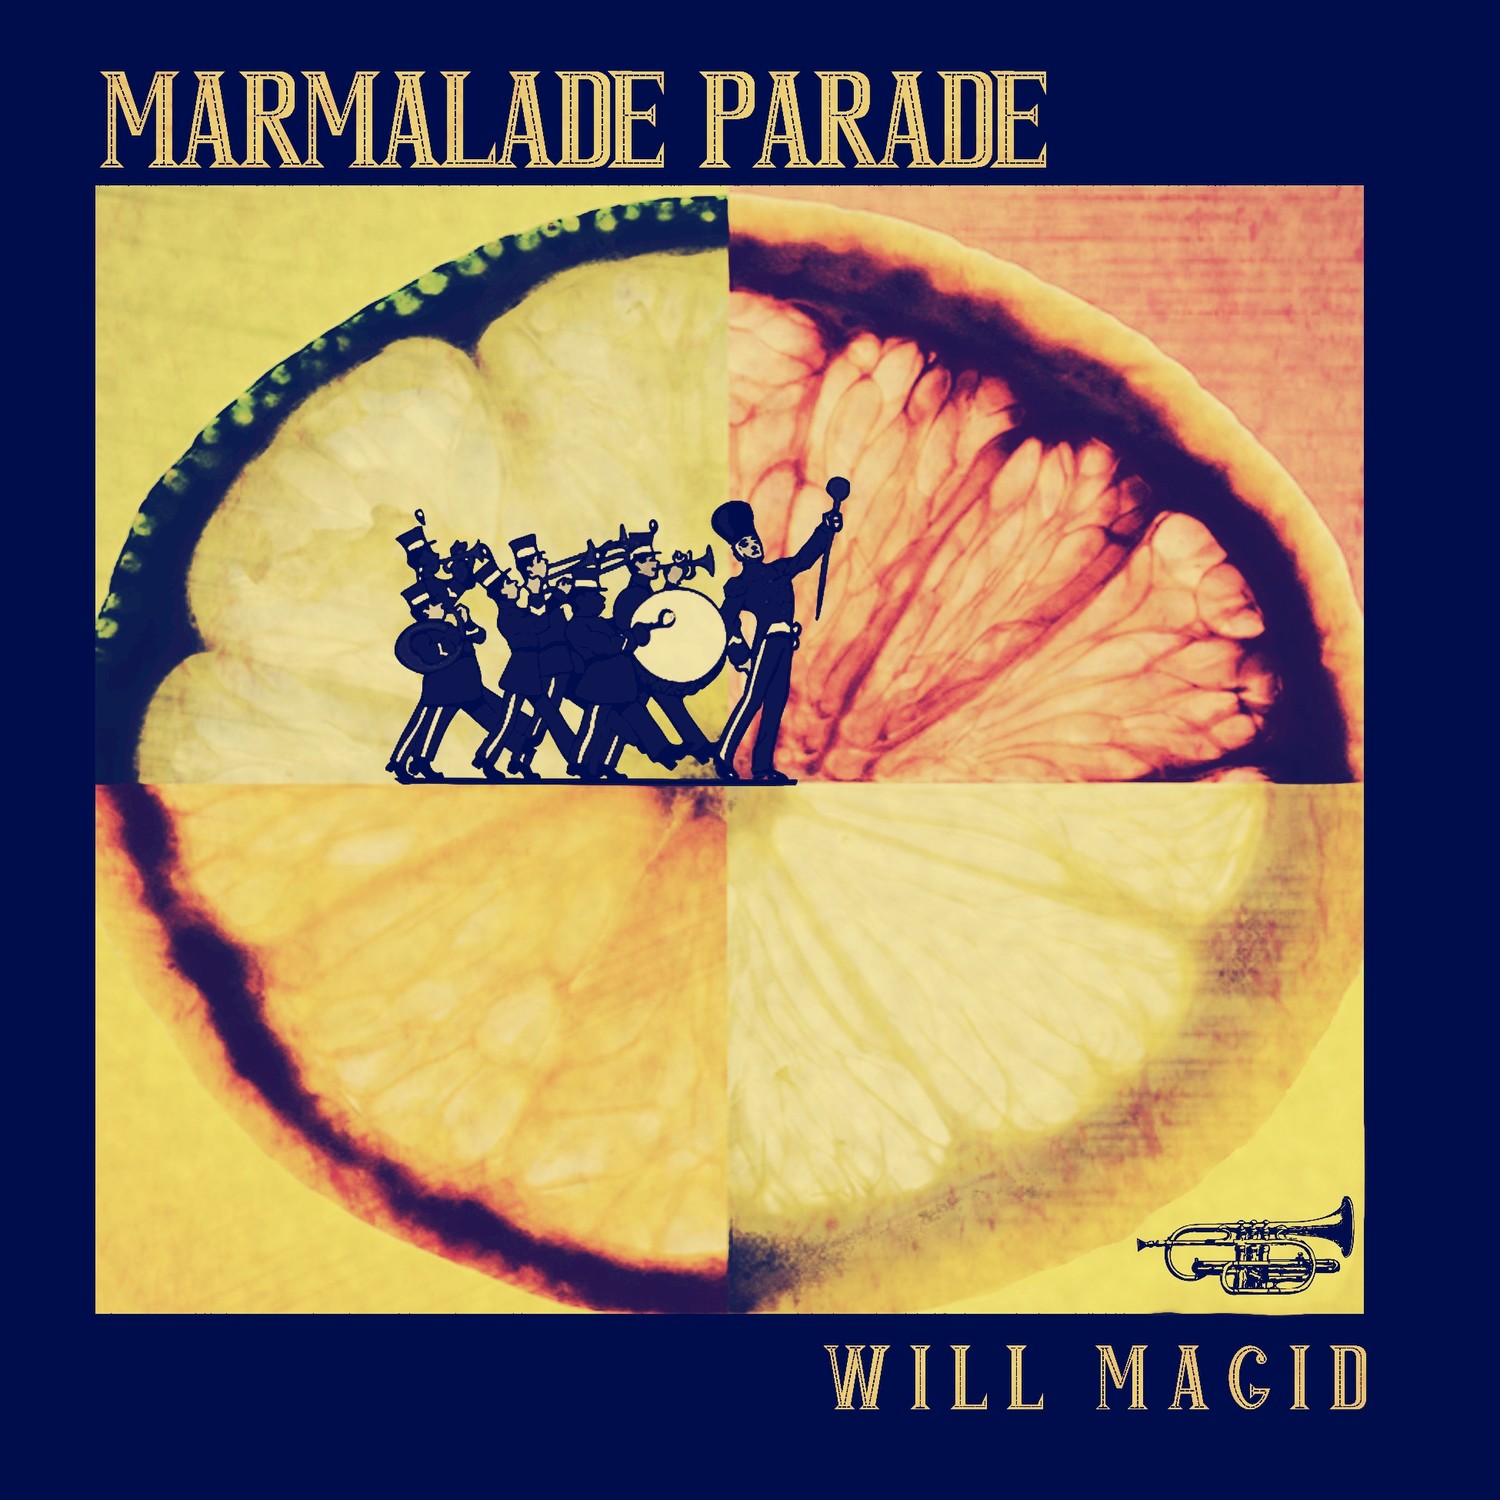 Marmalade Parade